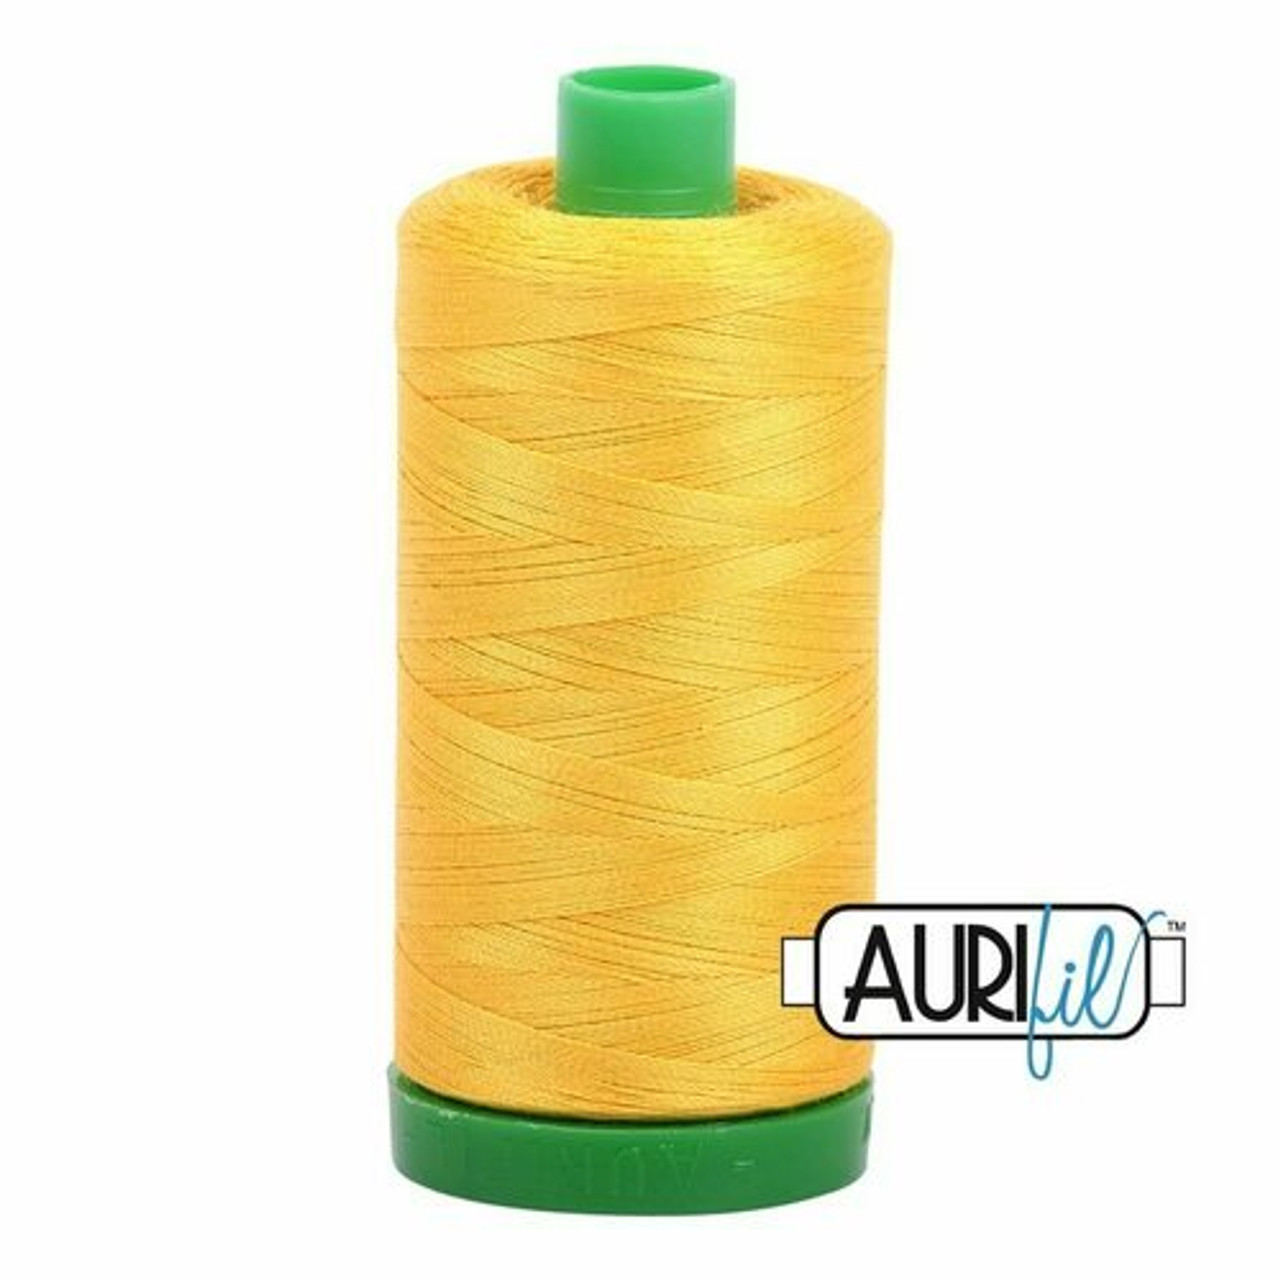 Aurifil 2135 - Yellow